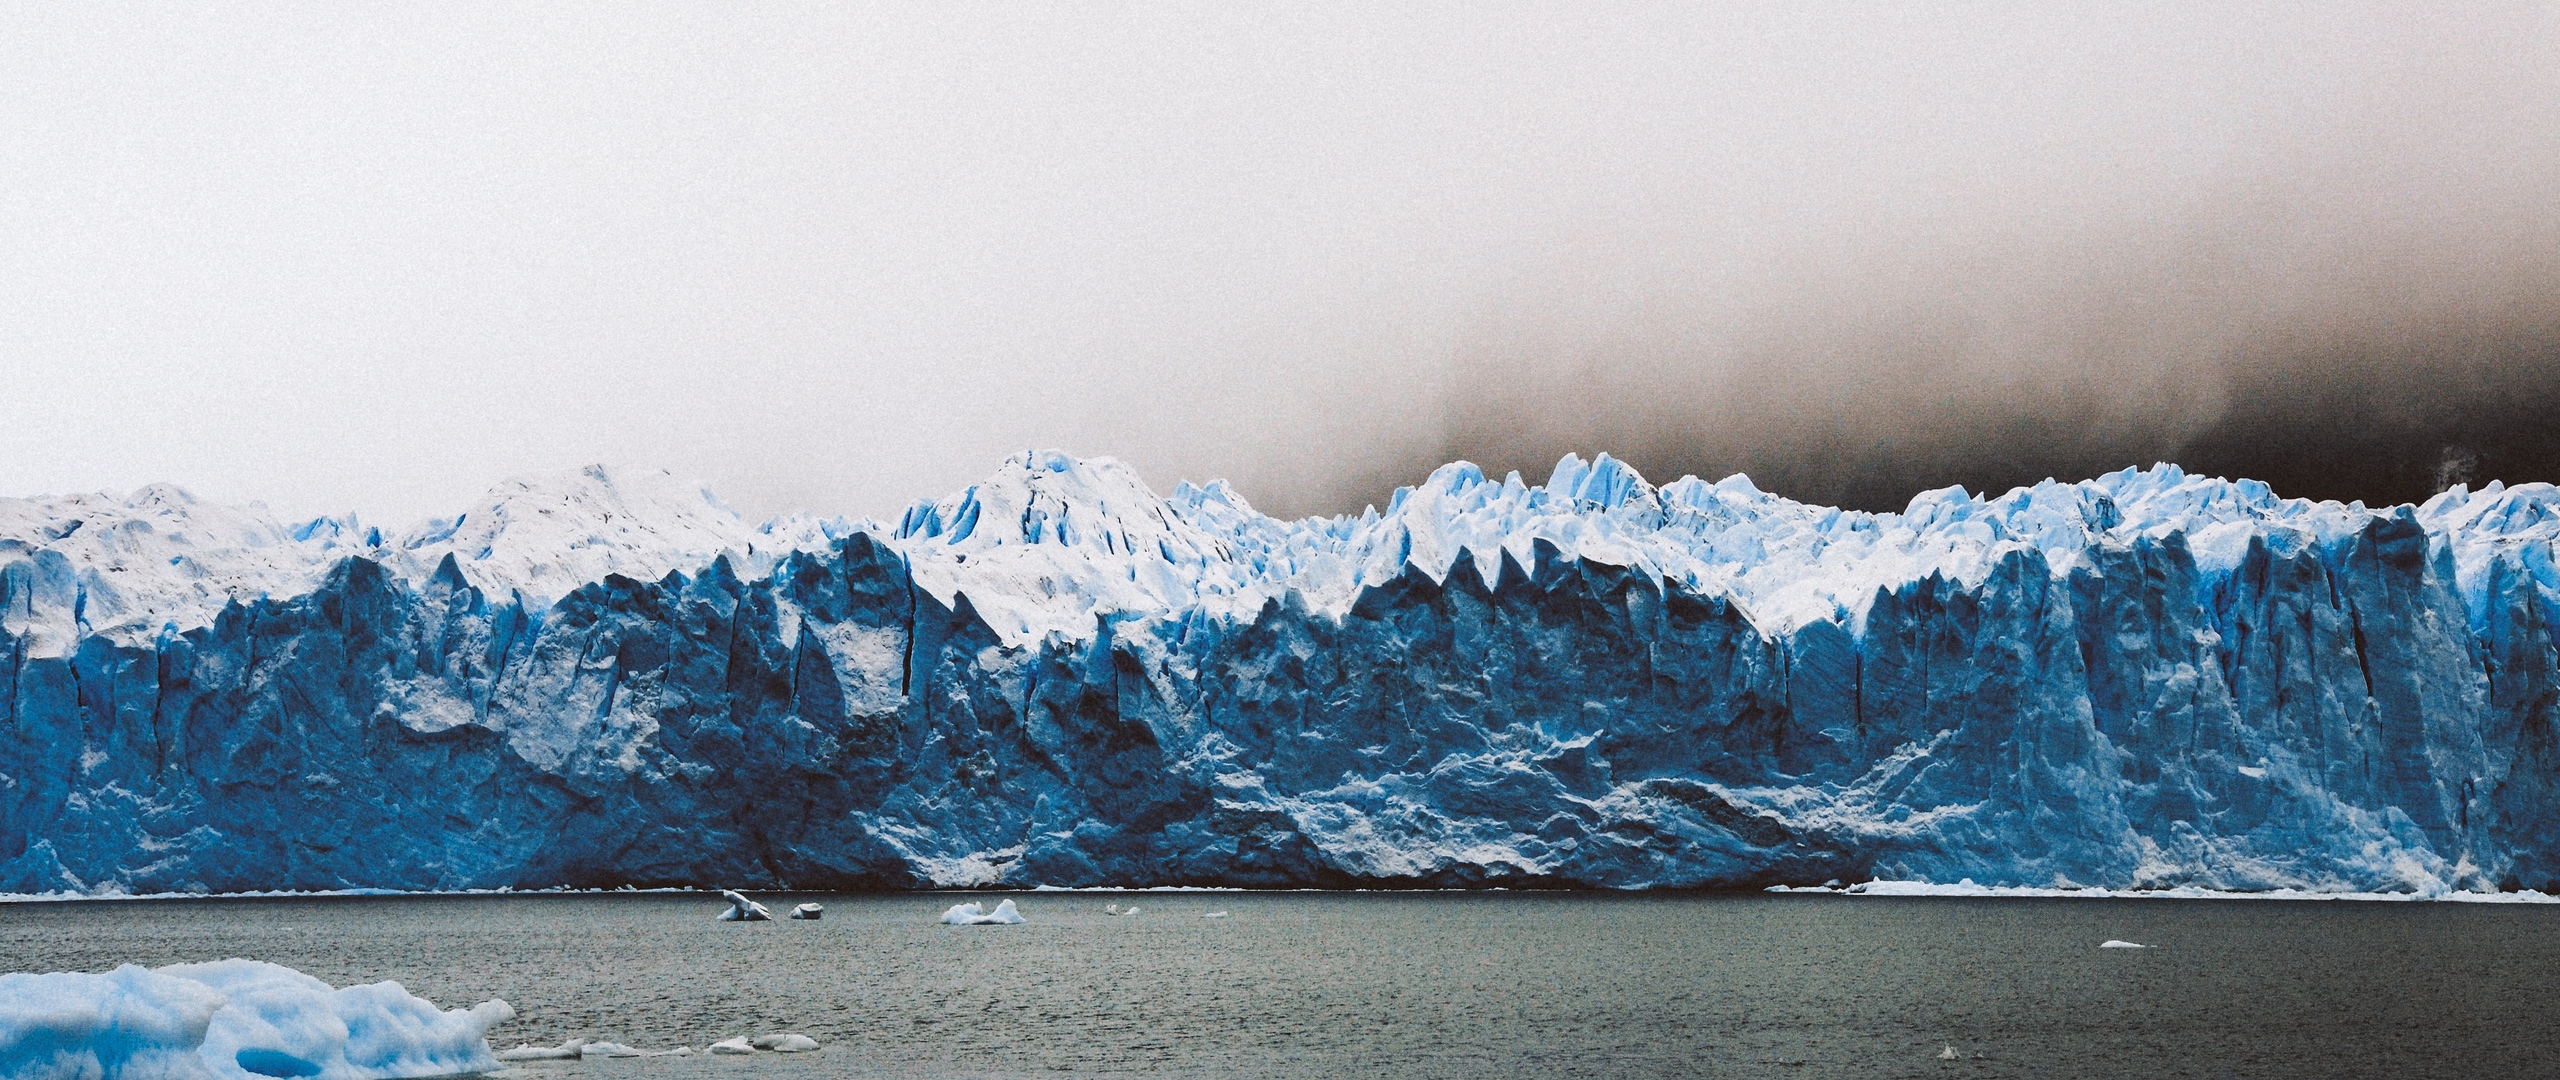 Download wallpapers perito moreno glacier, glacier, los